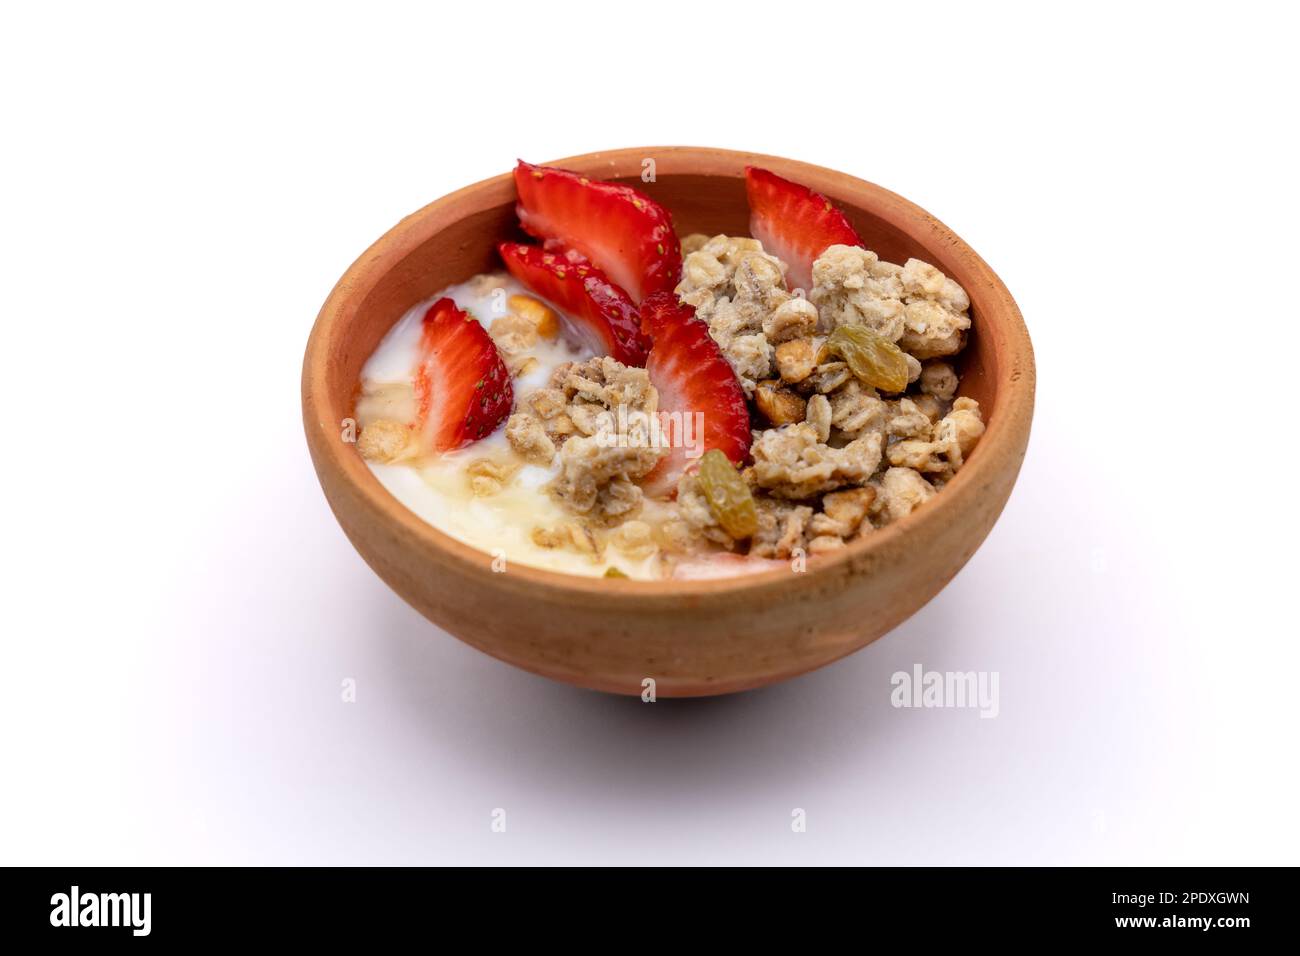 Colazione sana - cereali avena, fragola, miele con yogurt noci nel recipiente di argilla Foto Stock